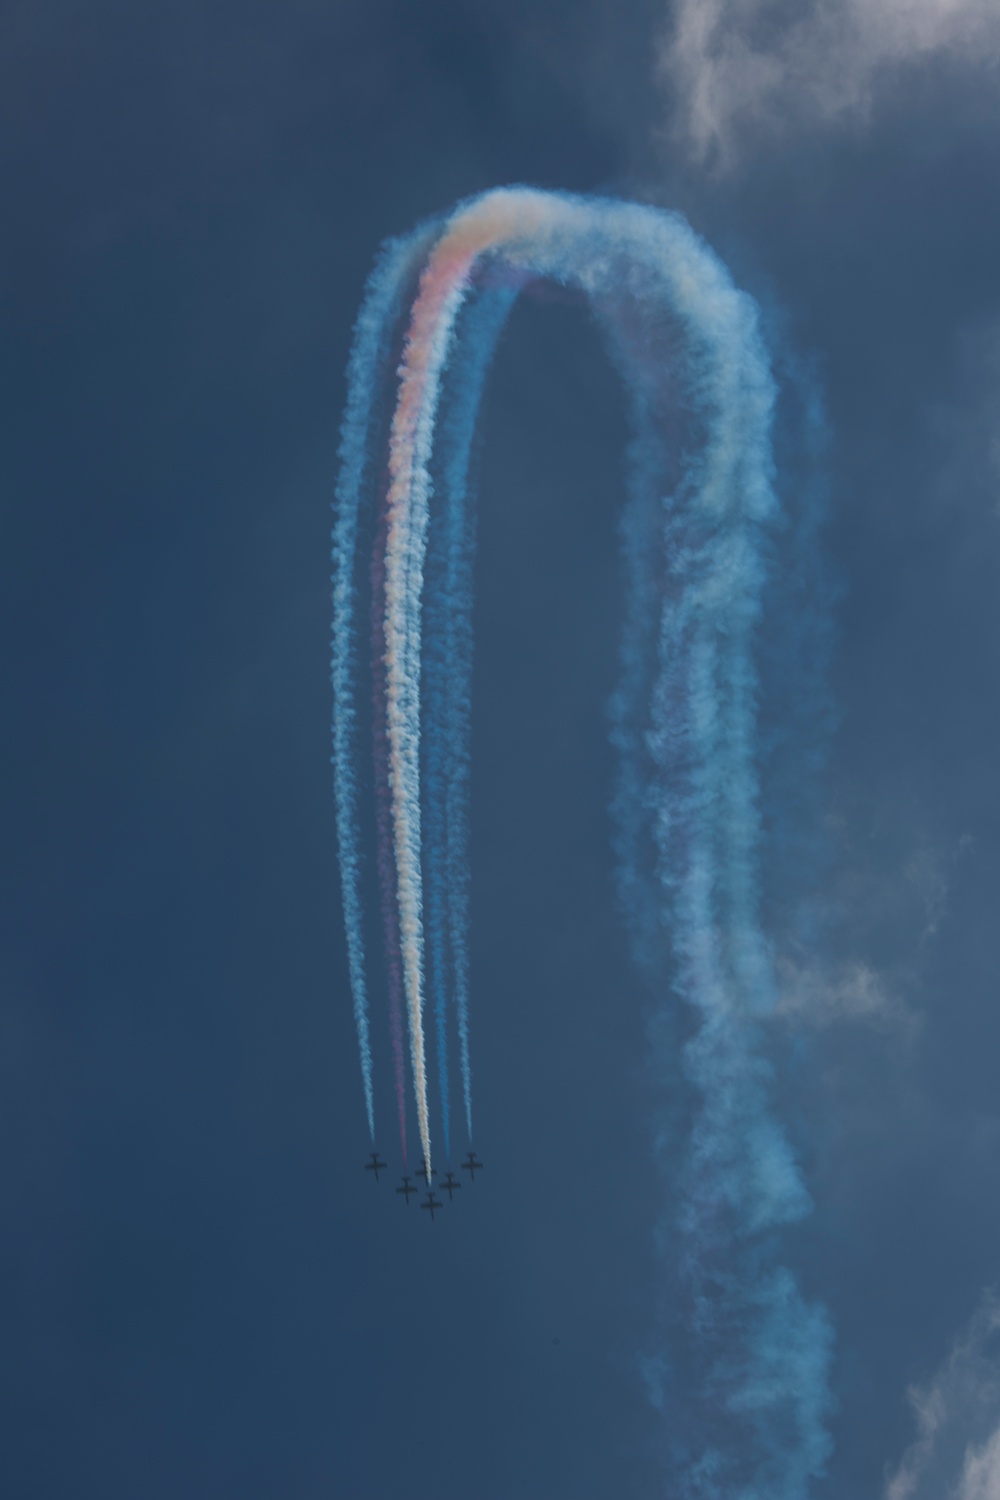 Patriots Jet Team flies over crowds at 2015 MCAS Miramar Air Show